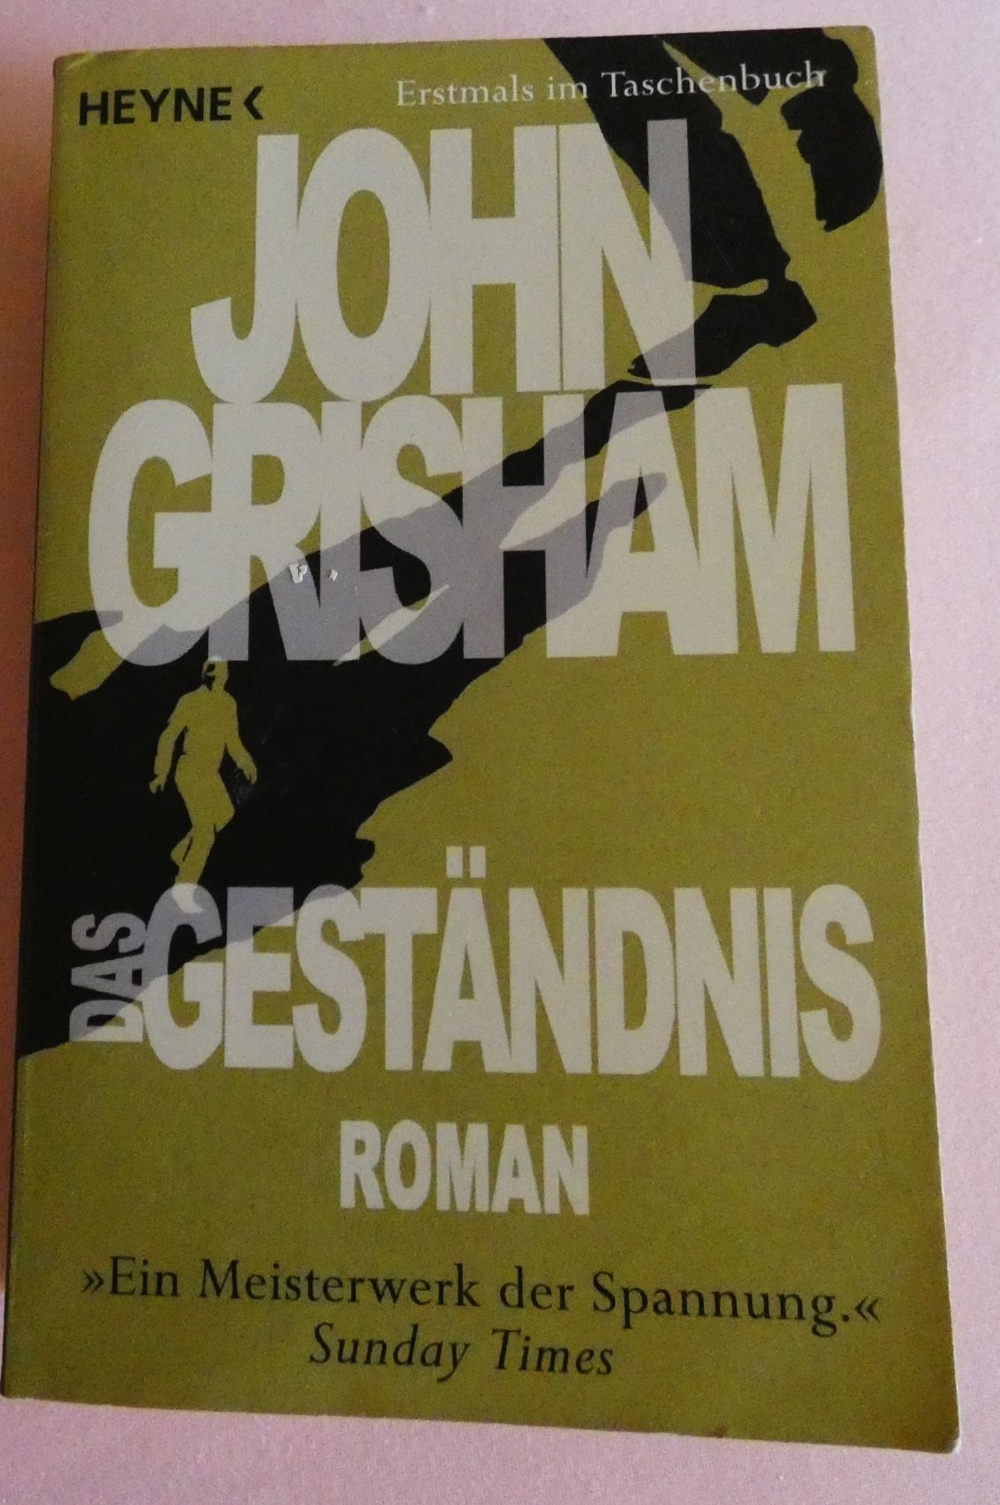 Das Geständnis / John Grisham / ISBN: 978-3-453-40949-1